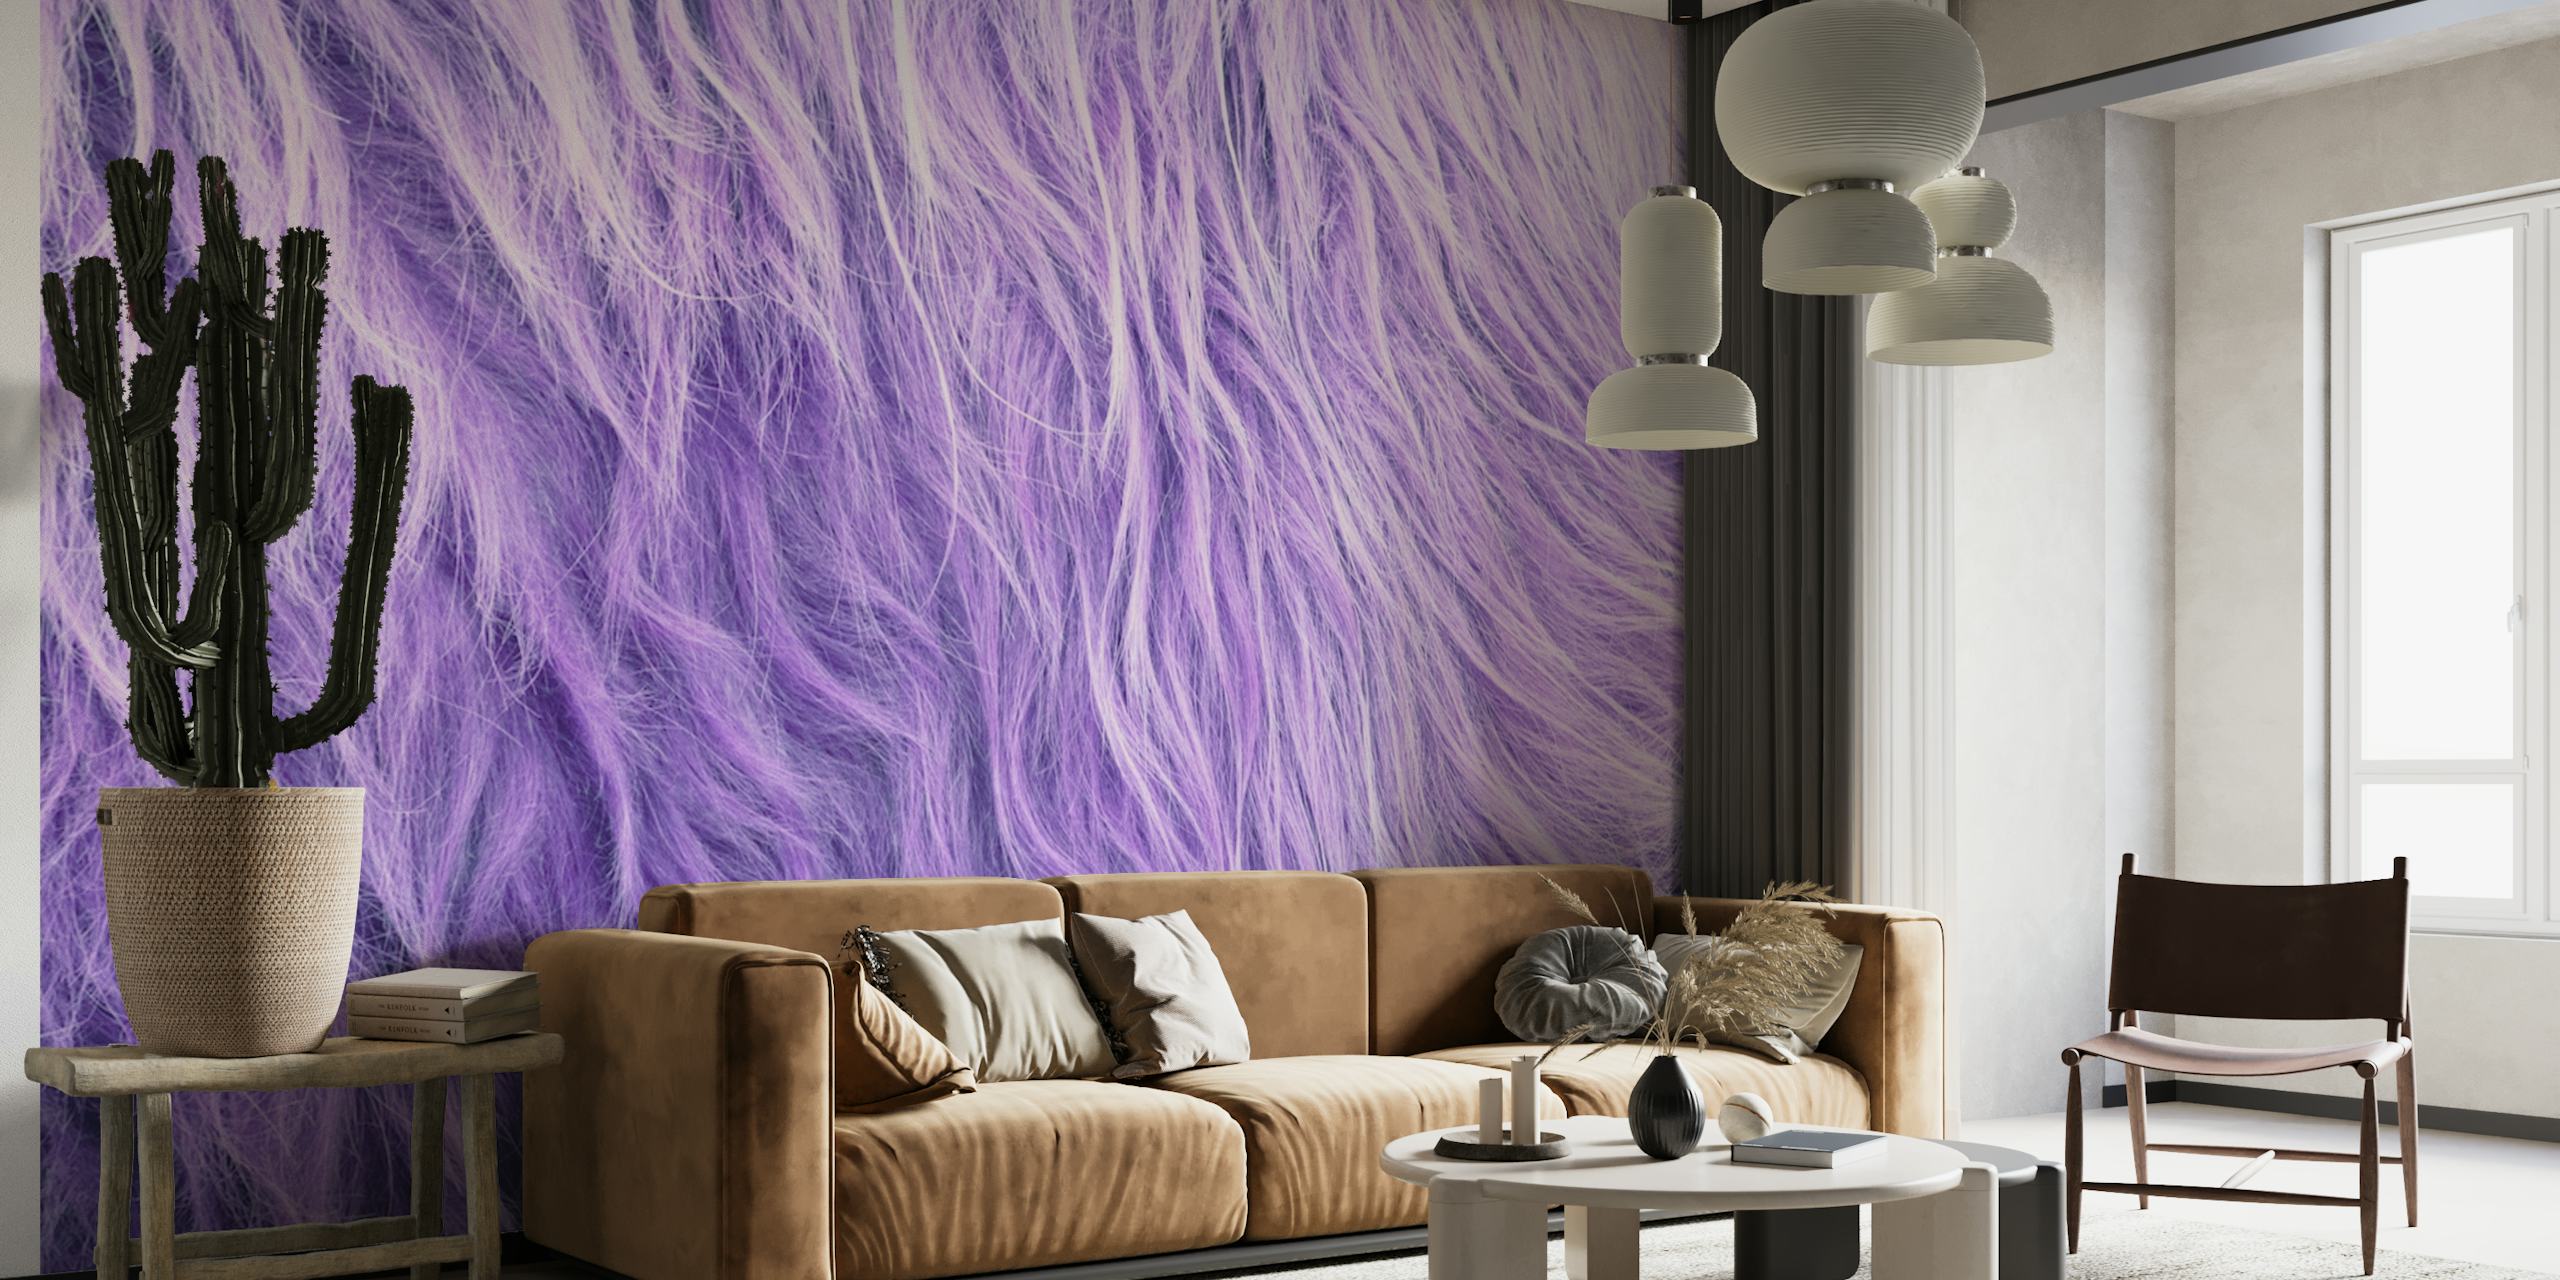 Strukturierte lila Kunstfell-Wandmalerei, die an Highland-Kuhfell erinnert